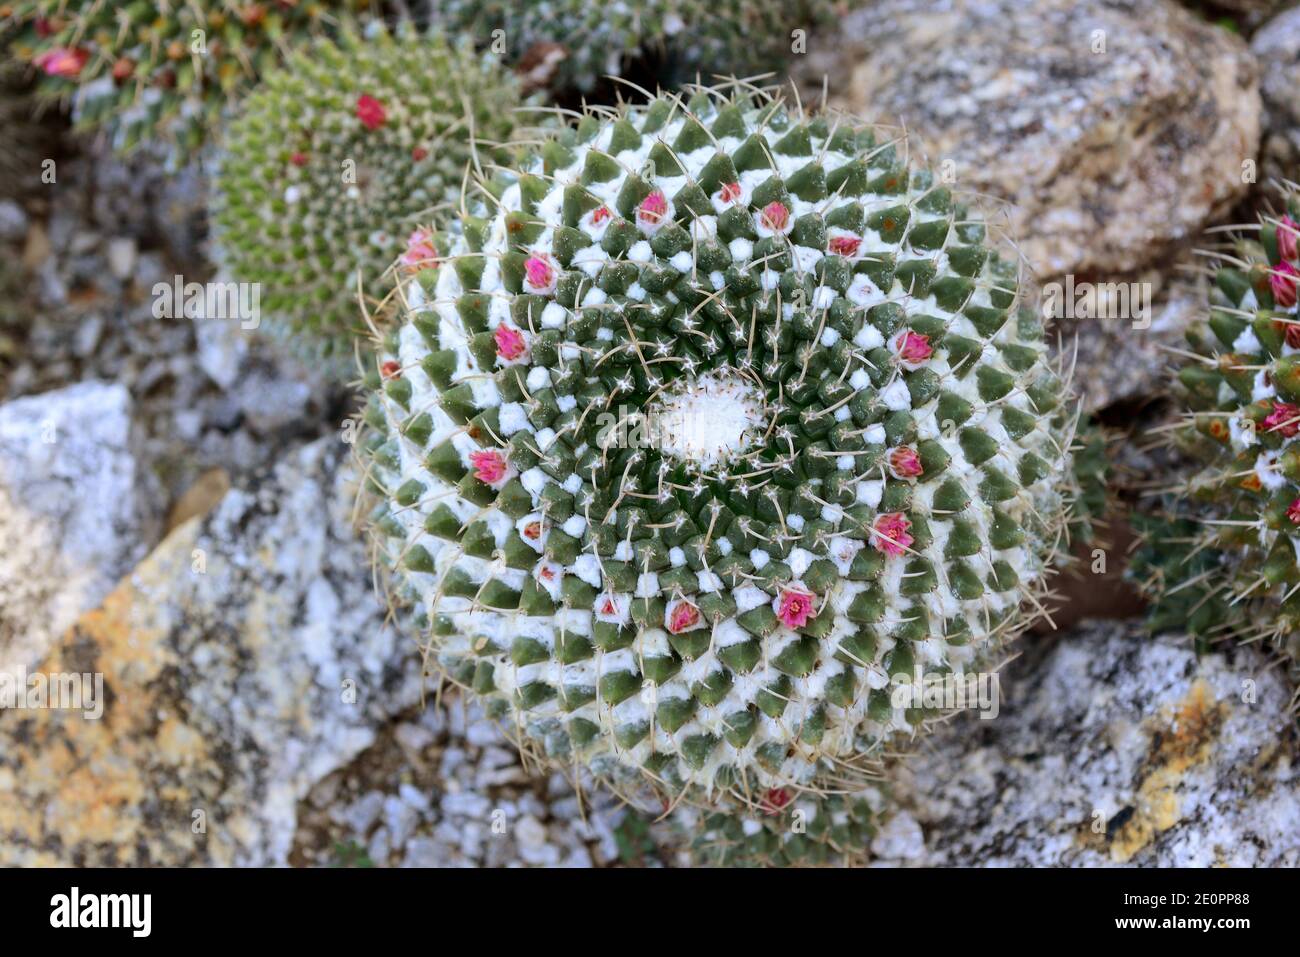 Cactus globo o cactus pezón (Mammillaria sp.) Es un cactus esférico nativo de México. Foto de stock